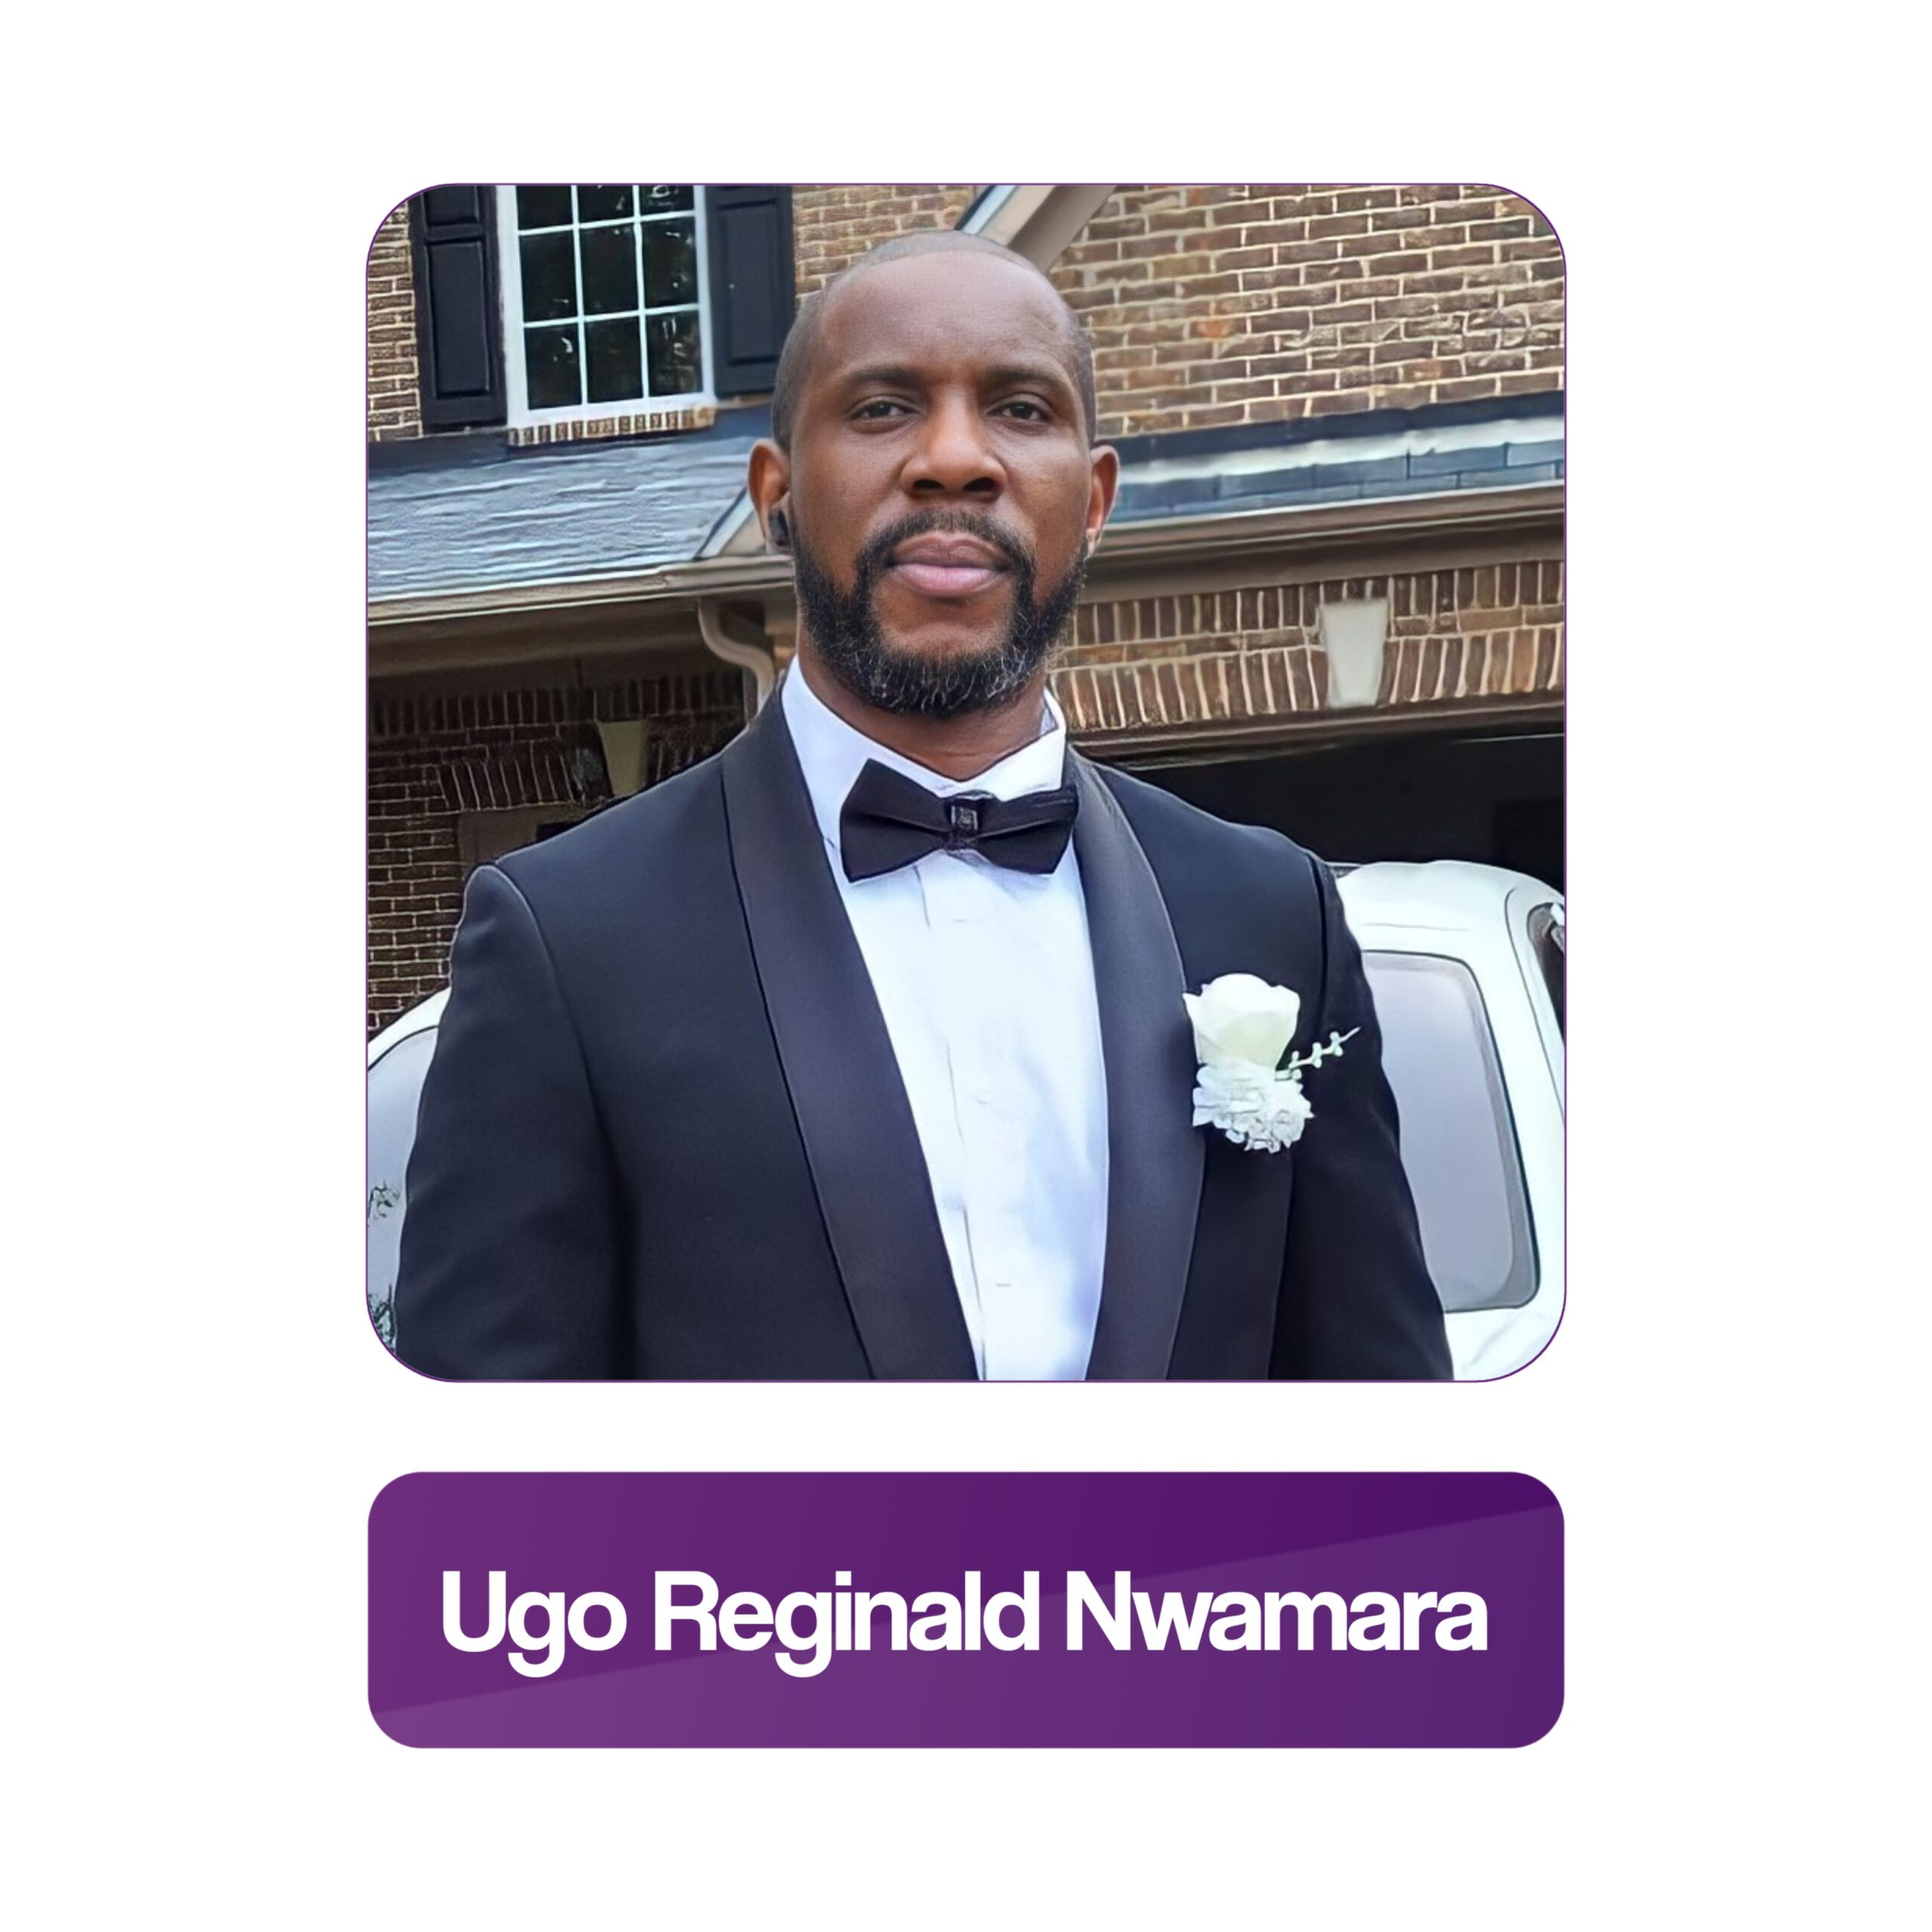 Ugo Reginald Nwamara